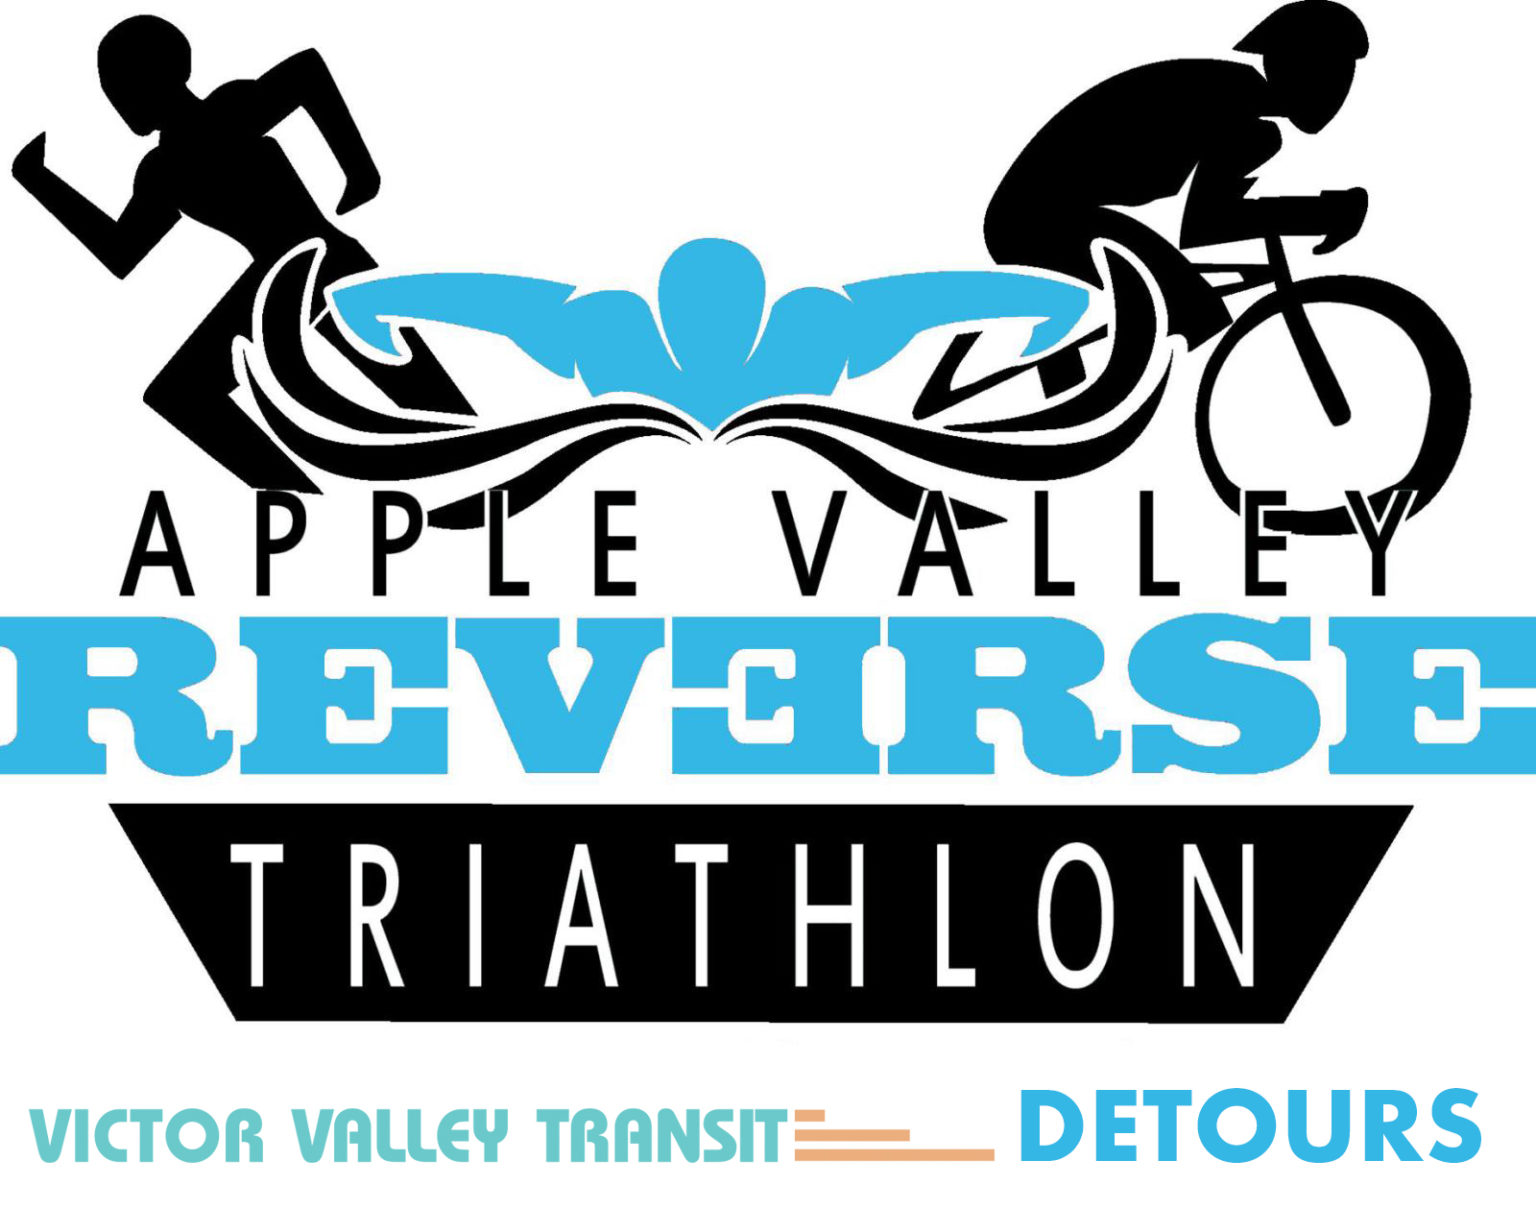 Apple Valley Reverse Triathlon Detours VVTA